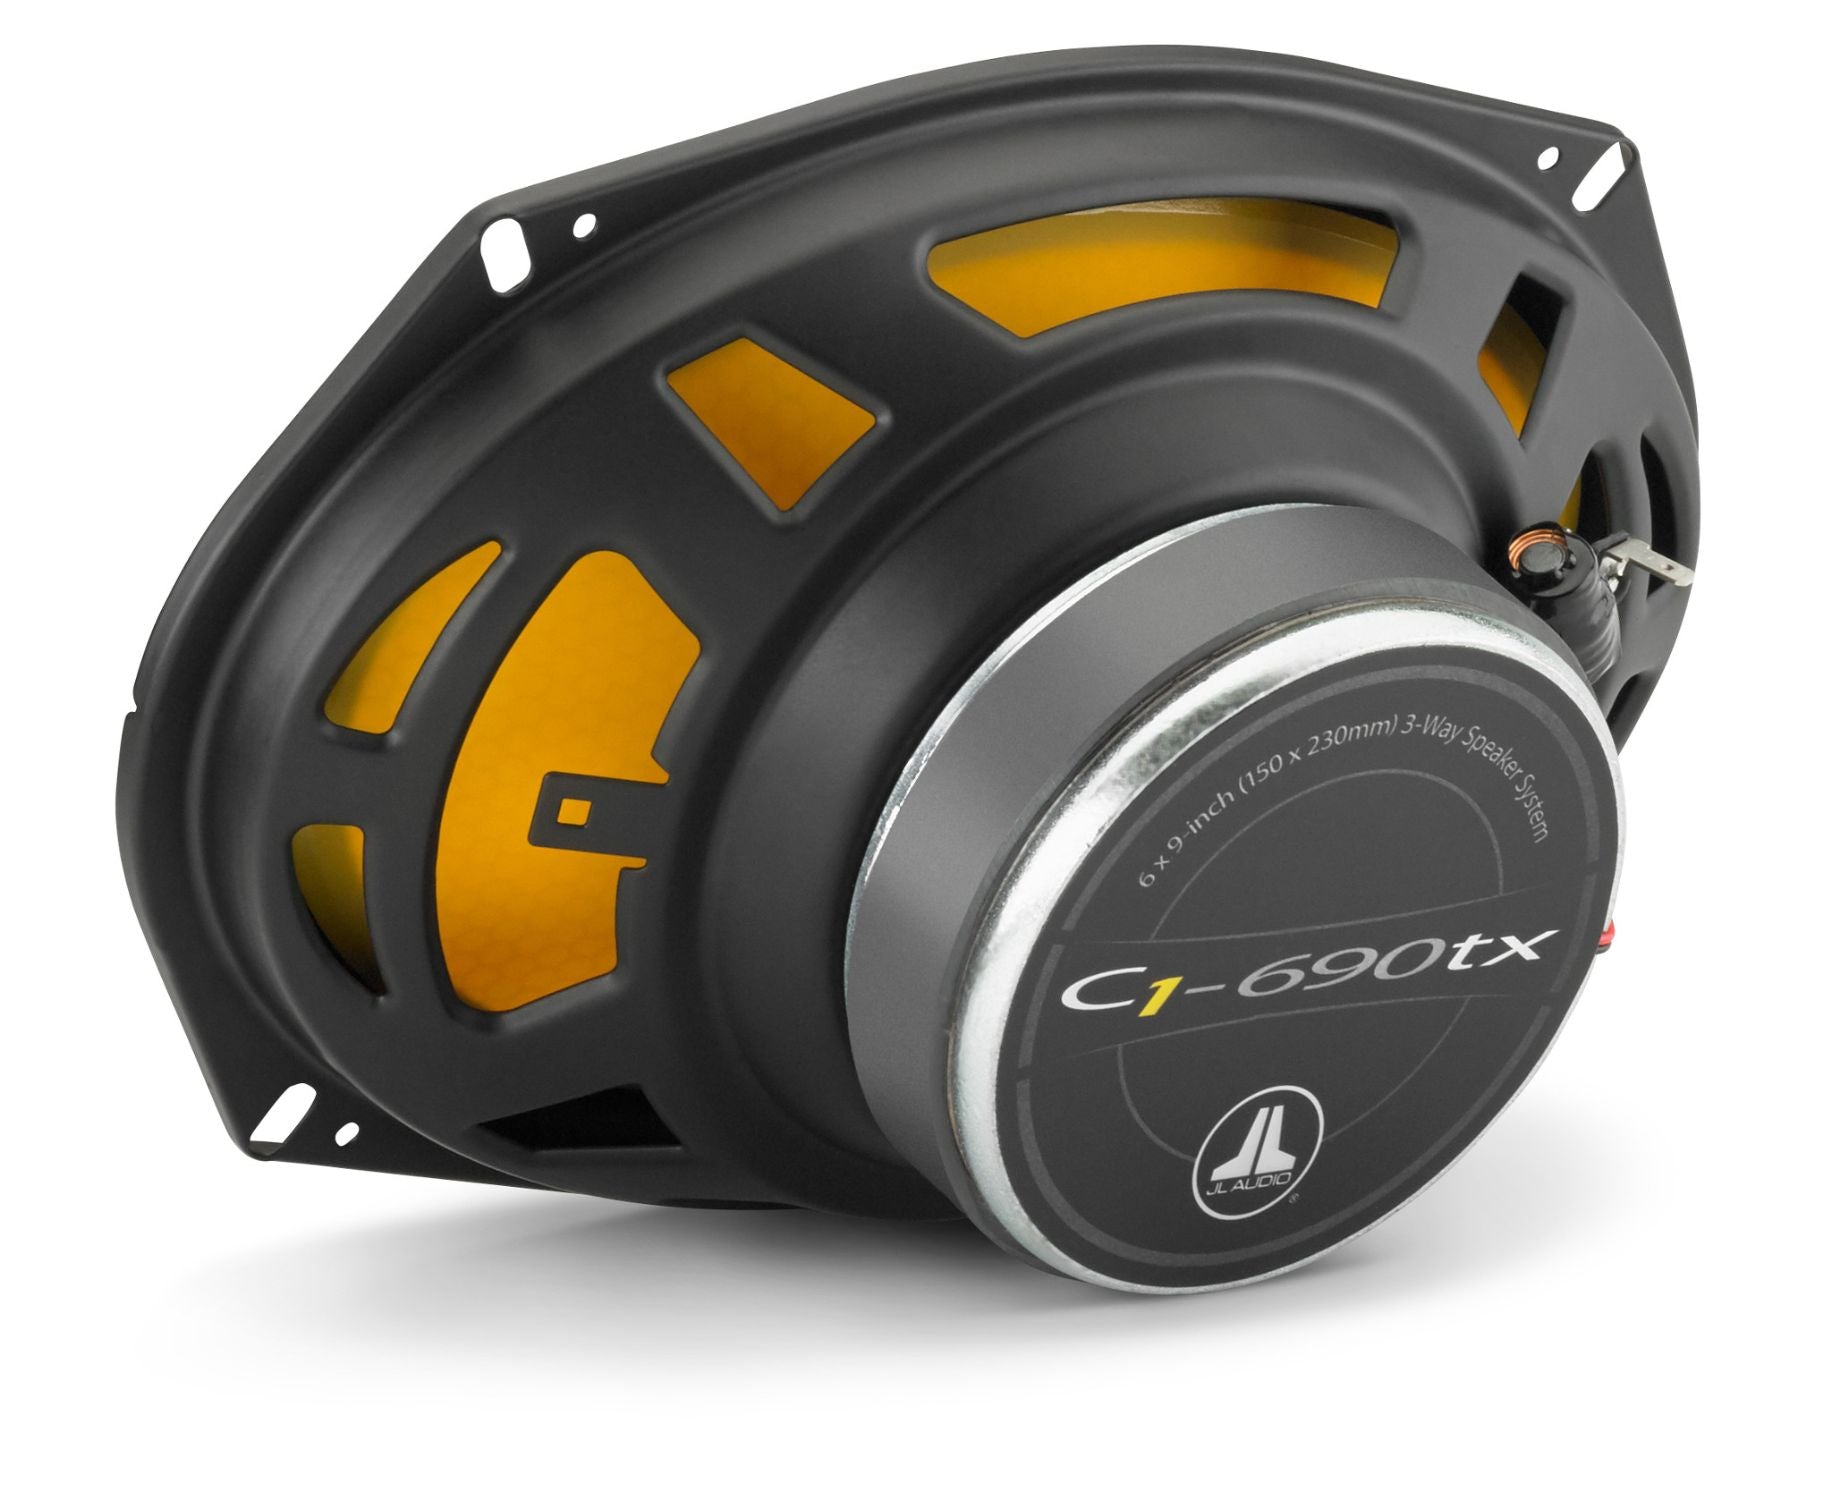 JL Audio C1 690 6x9" 3-Way Coaxial Speakers